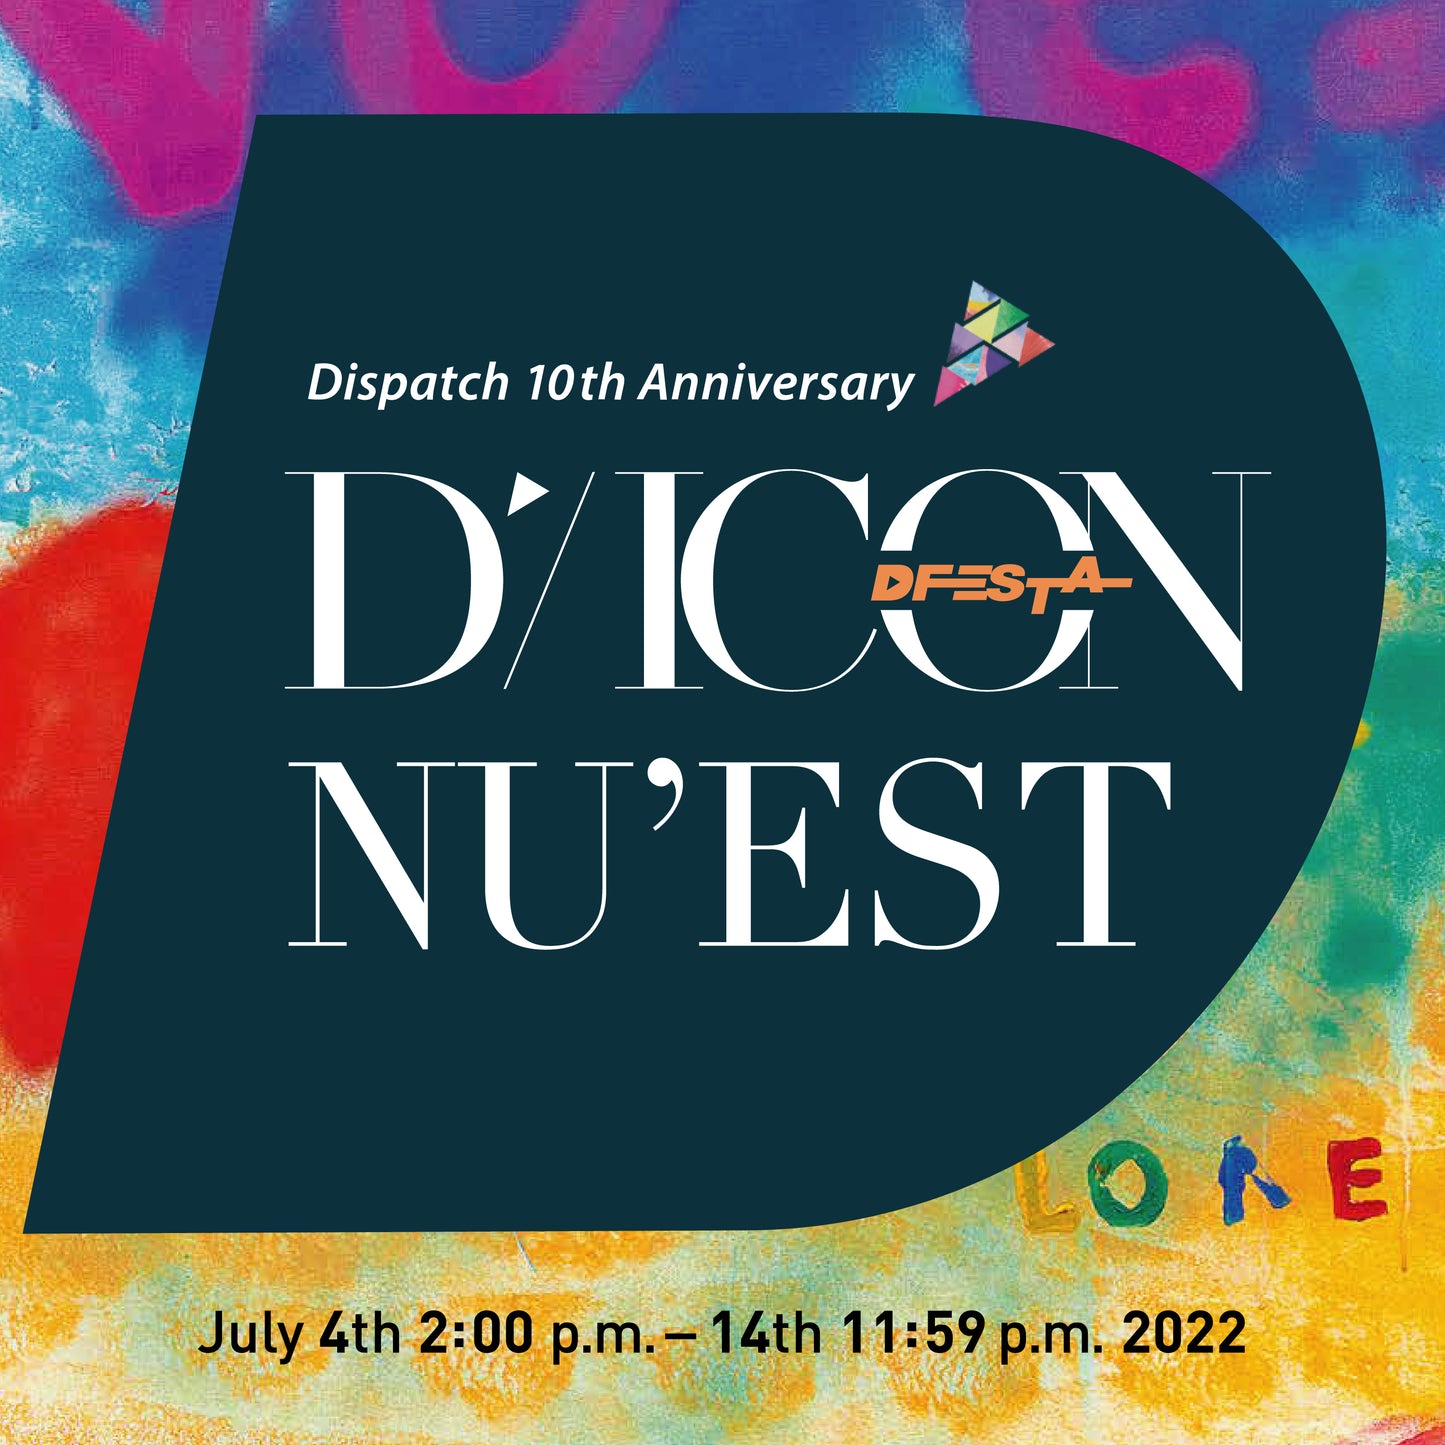 NU'EST | Dispatch 10th Anniversary | DICON D'FESTA NU'EST